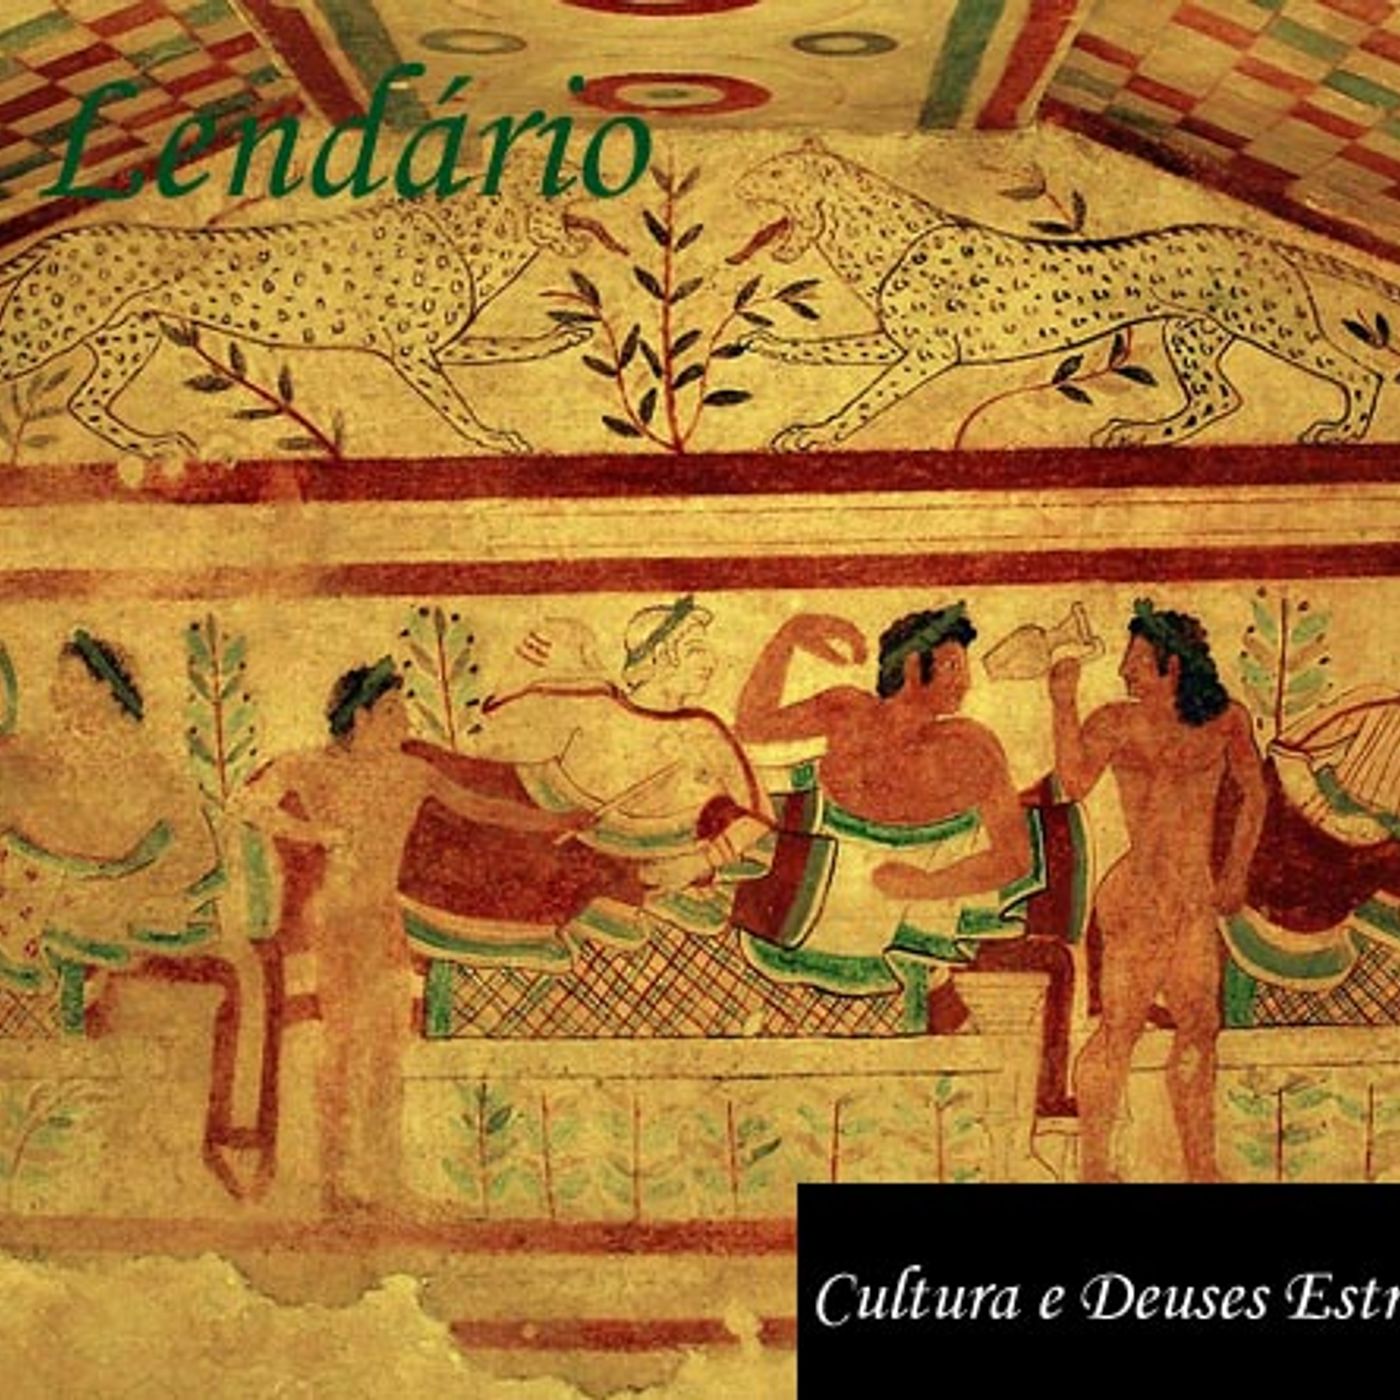 Papo Lendário #199 – Cultura e Deuses Etruscos